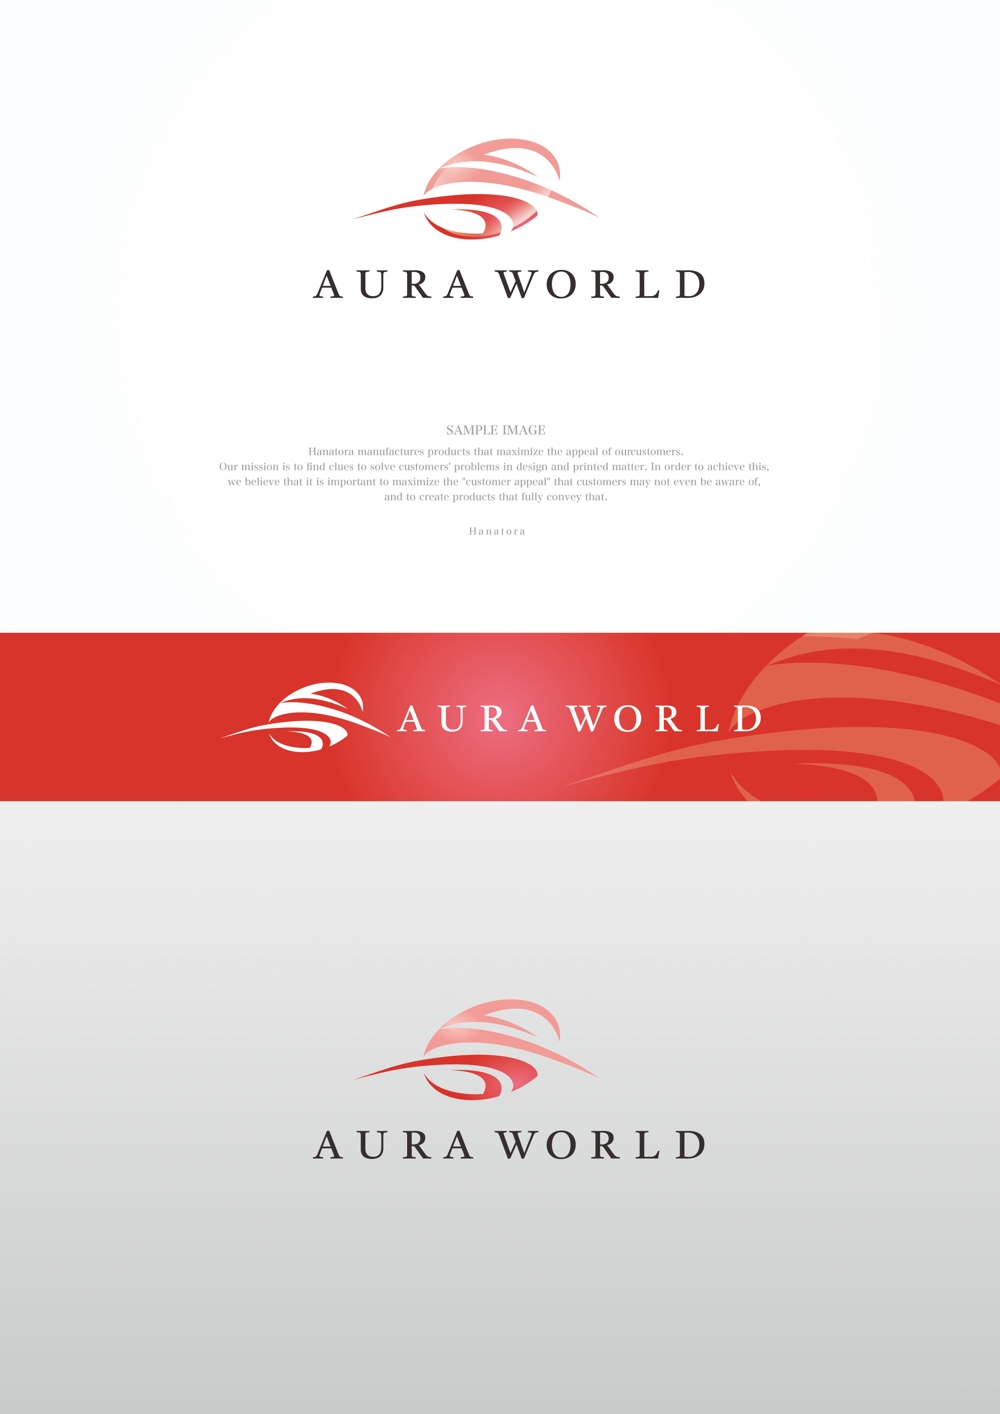 会社のオフィシャル「AURA WORLD」のロゴ